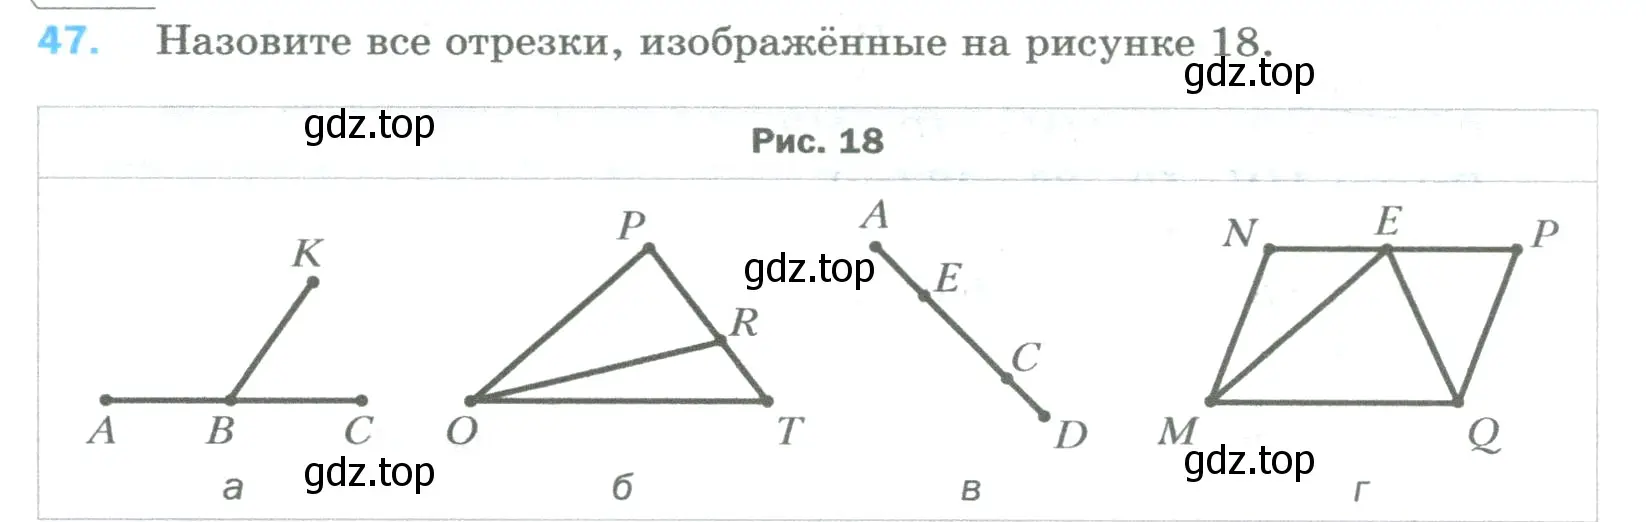 Условие номер 47 (страница 20) гдз по математике 5 класс Мерзляк, Полонский, учебник